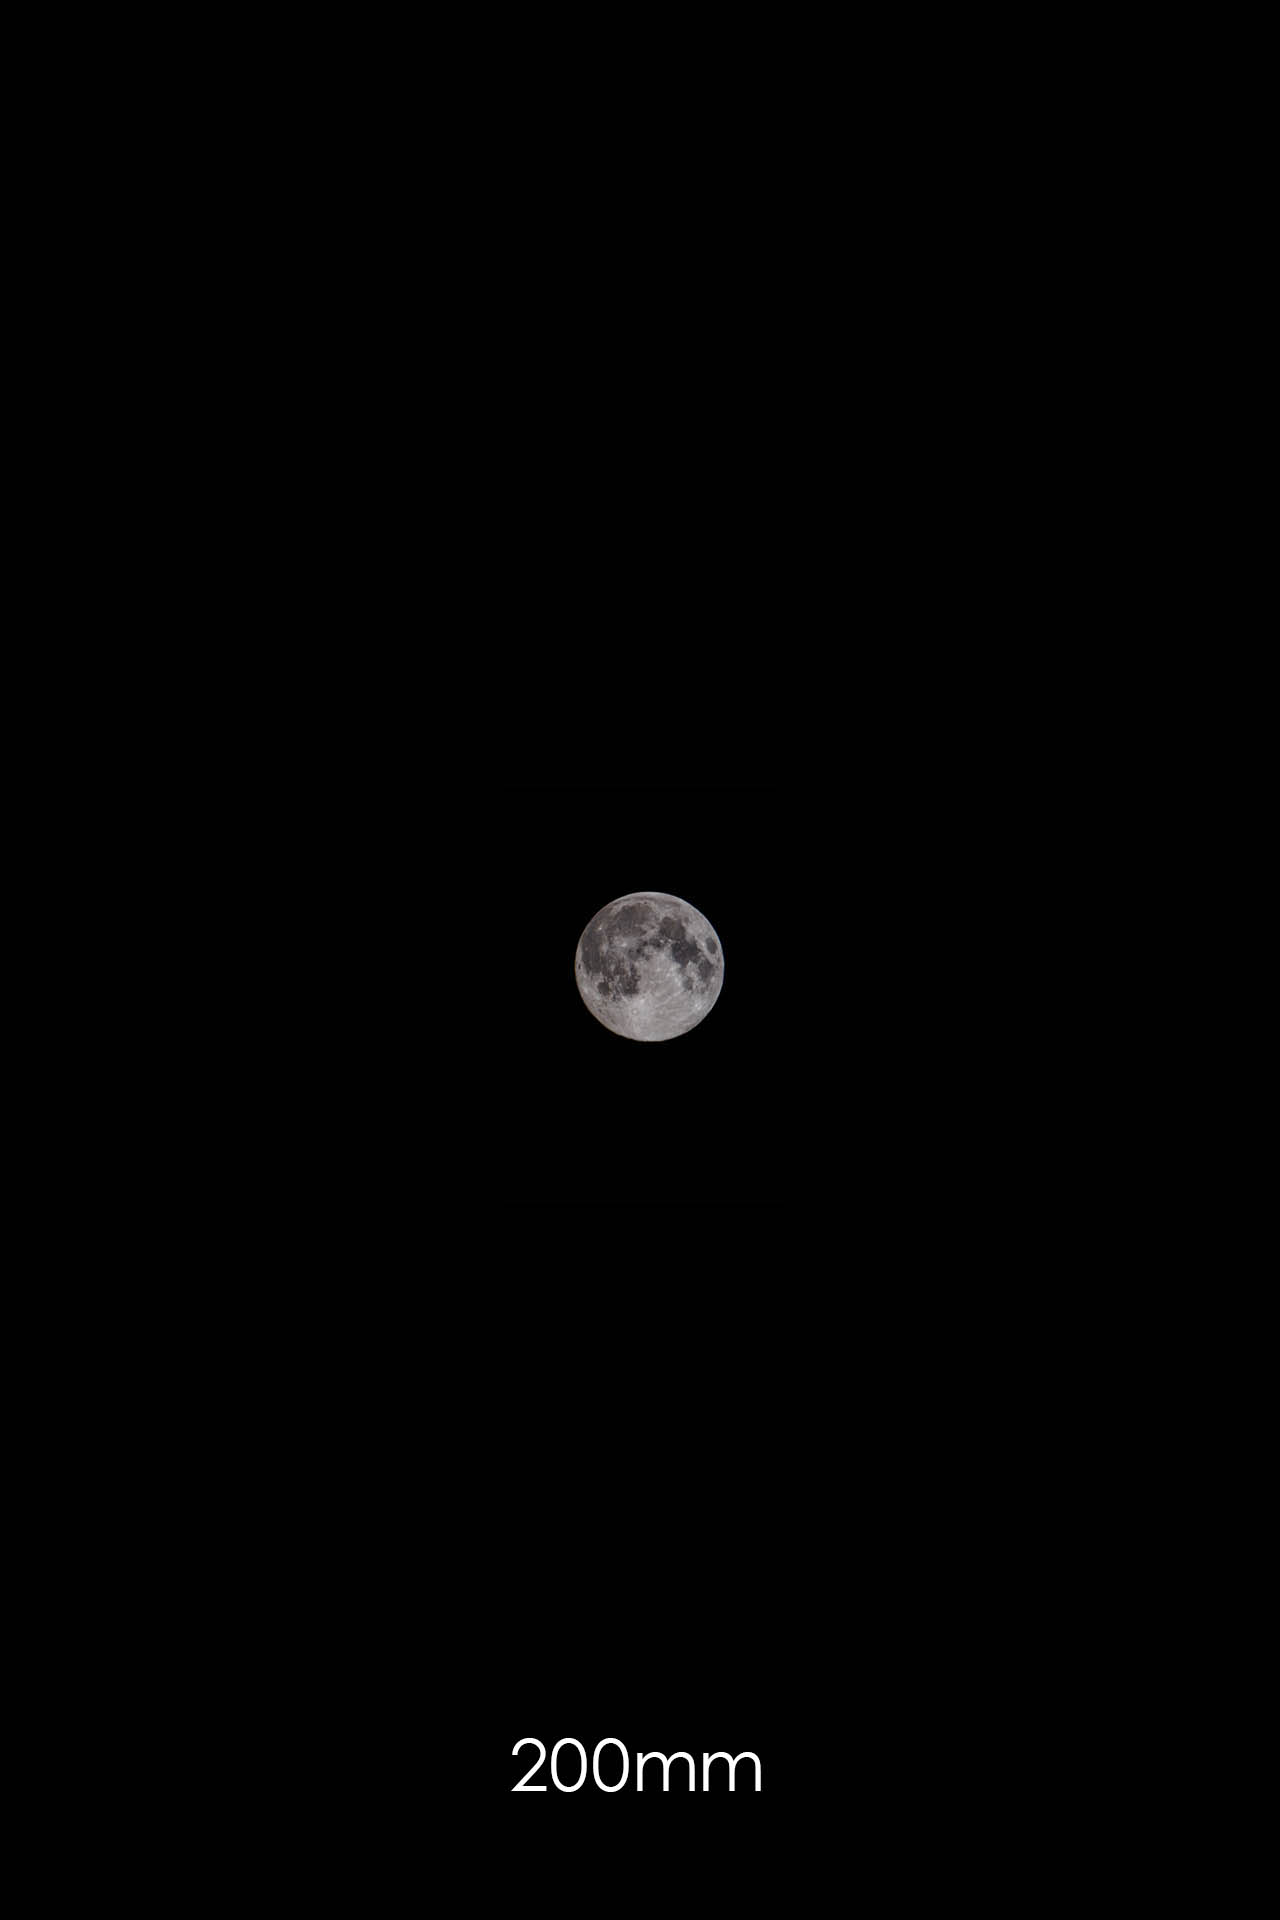 Mond mit 200mm Brennweite fotografiert